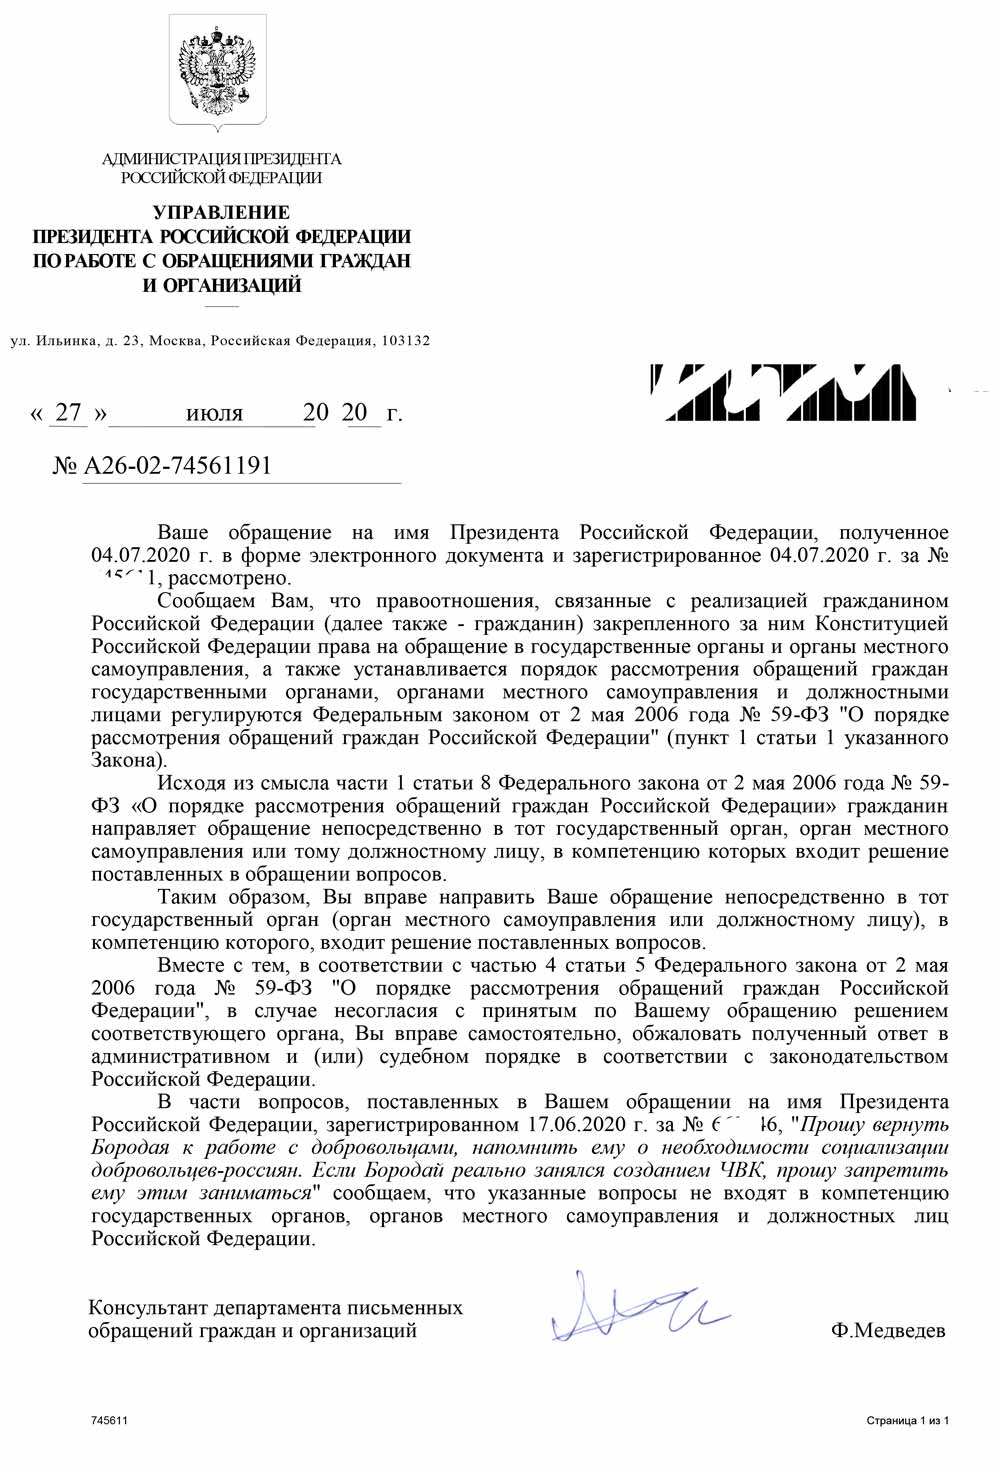 Кремль отказался запрещать Бородаю создавать ЧВК